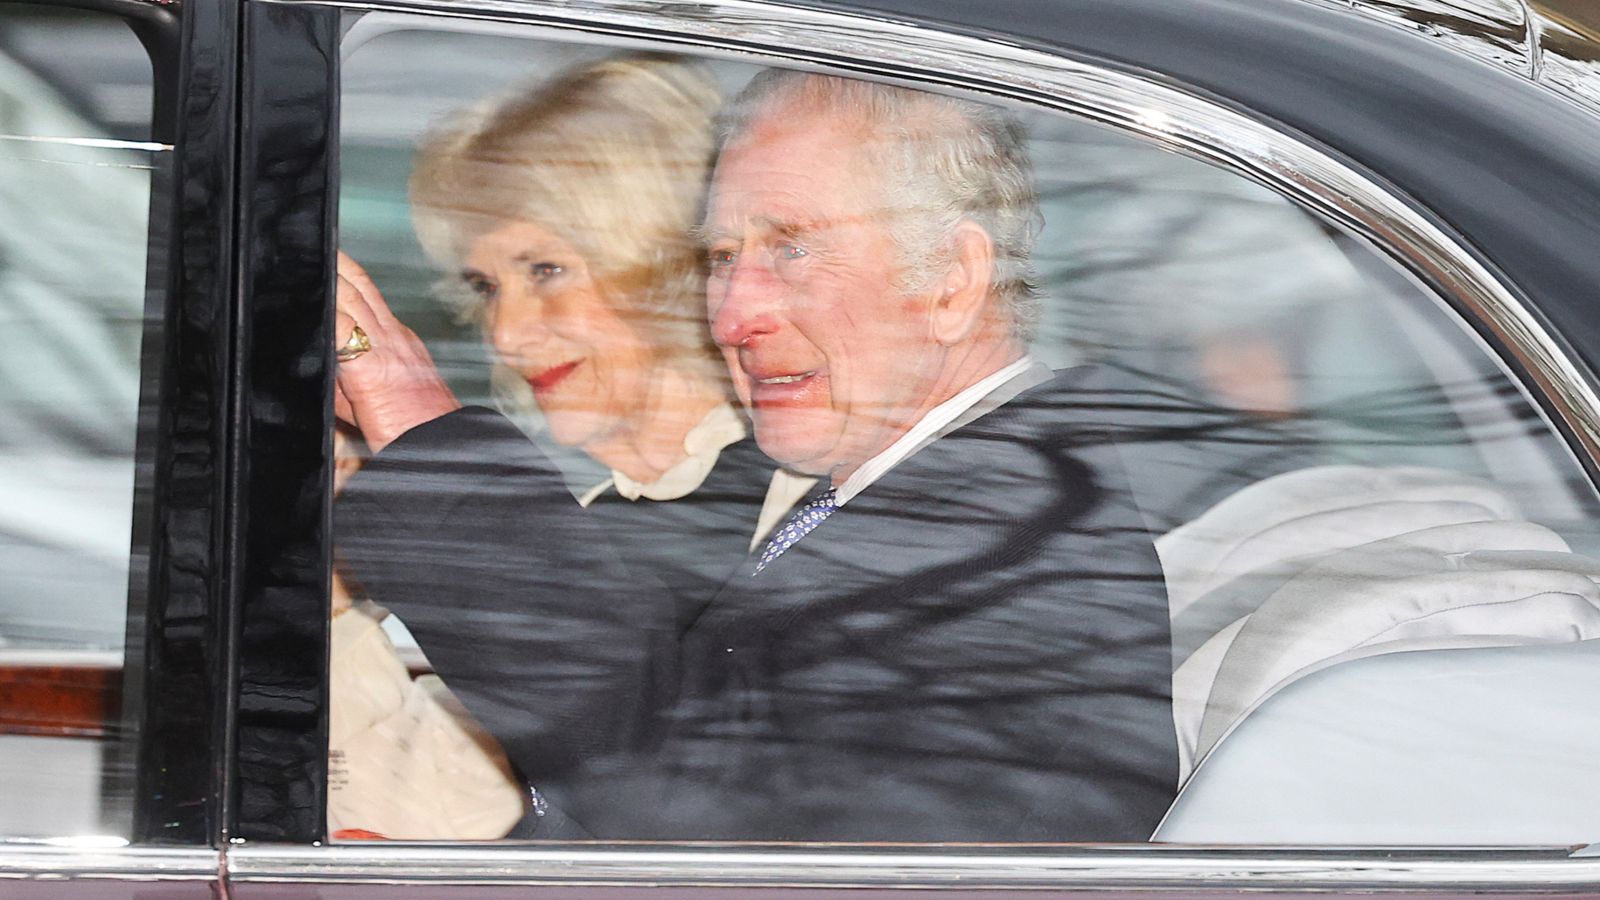 الملك تشارلز يعقد لقاء أسبوعيًا مع رئيس الوزراء ريشي سوناك عبر الهاتف بدلاً من الحضور شخصيًا |  أخبار المملكة المتحدة